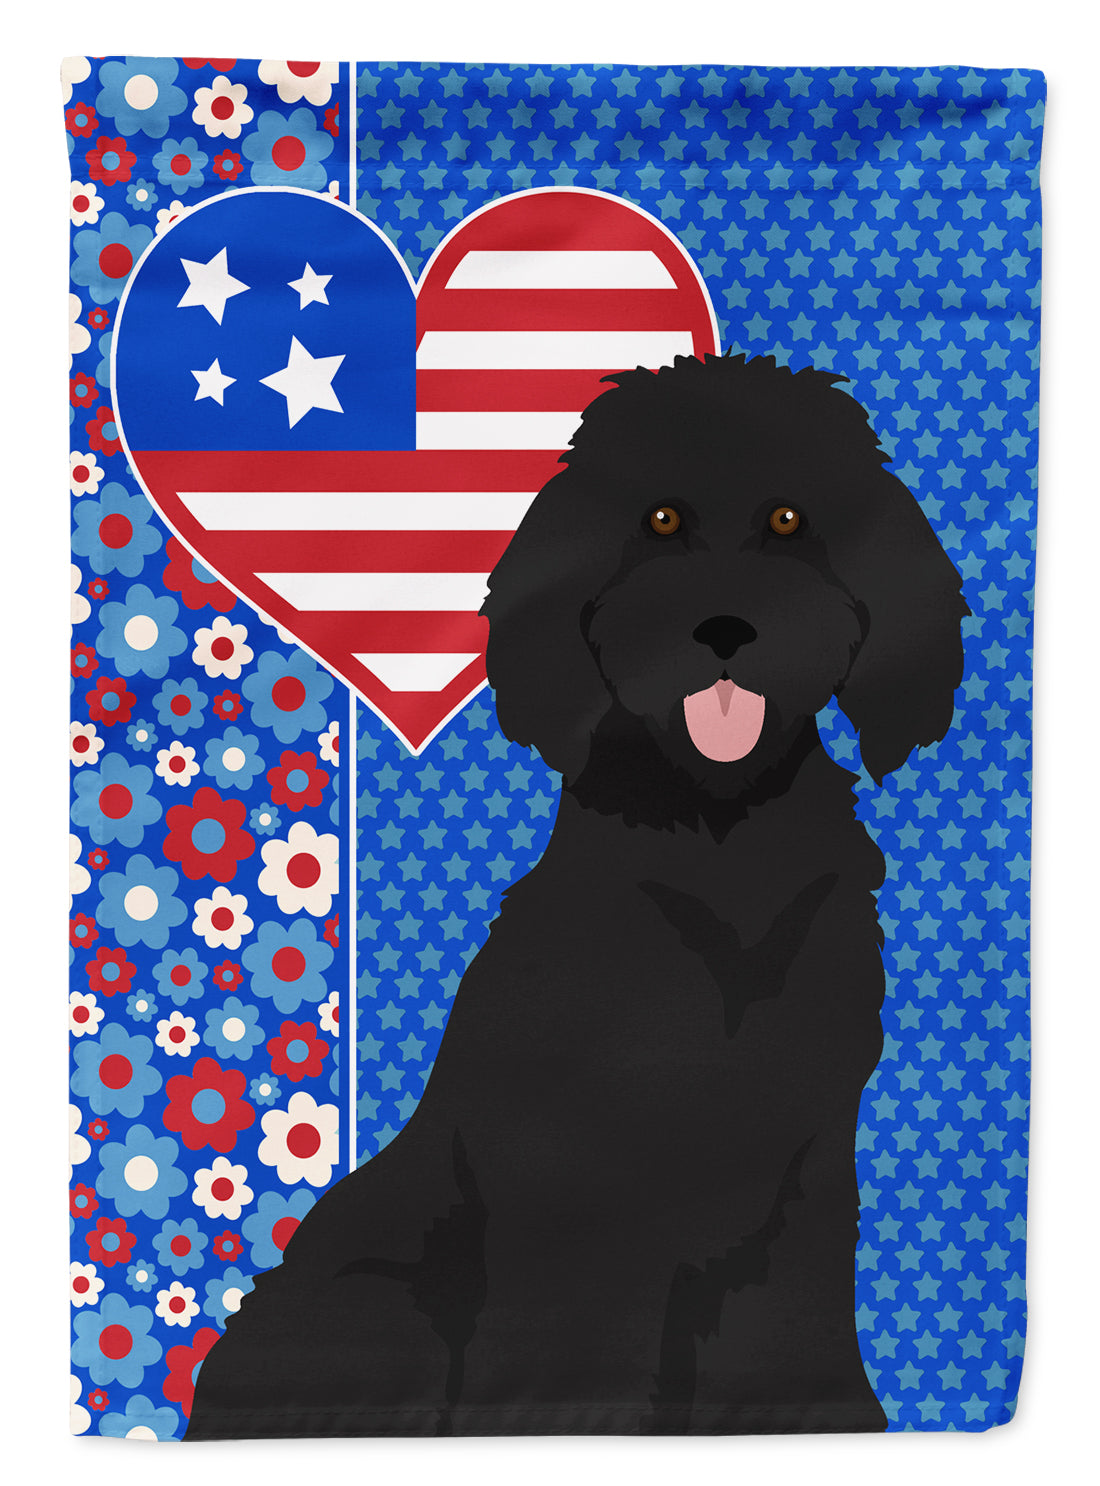 Standard Black Poodle USA American Flag Garden Size